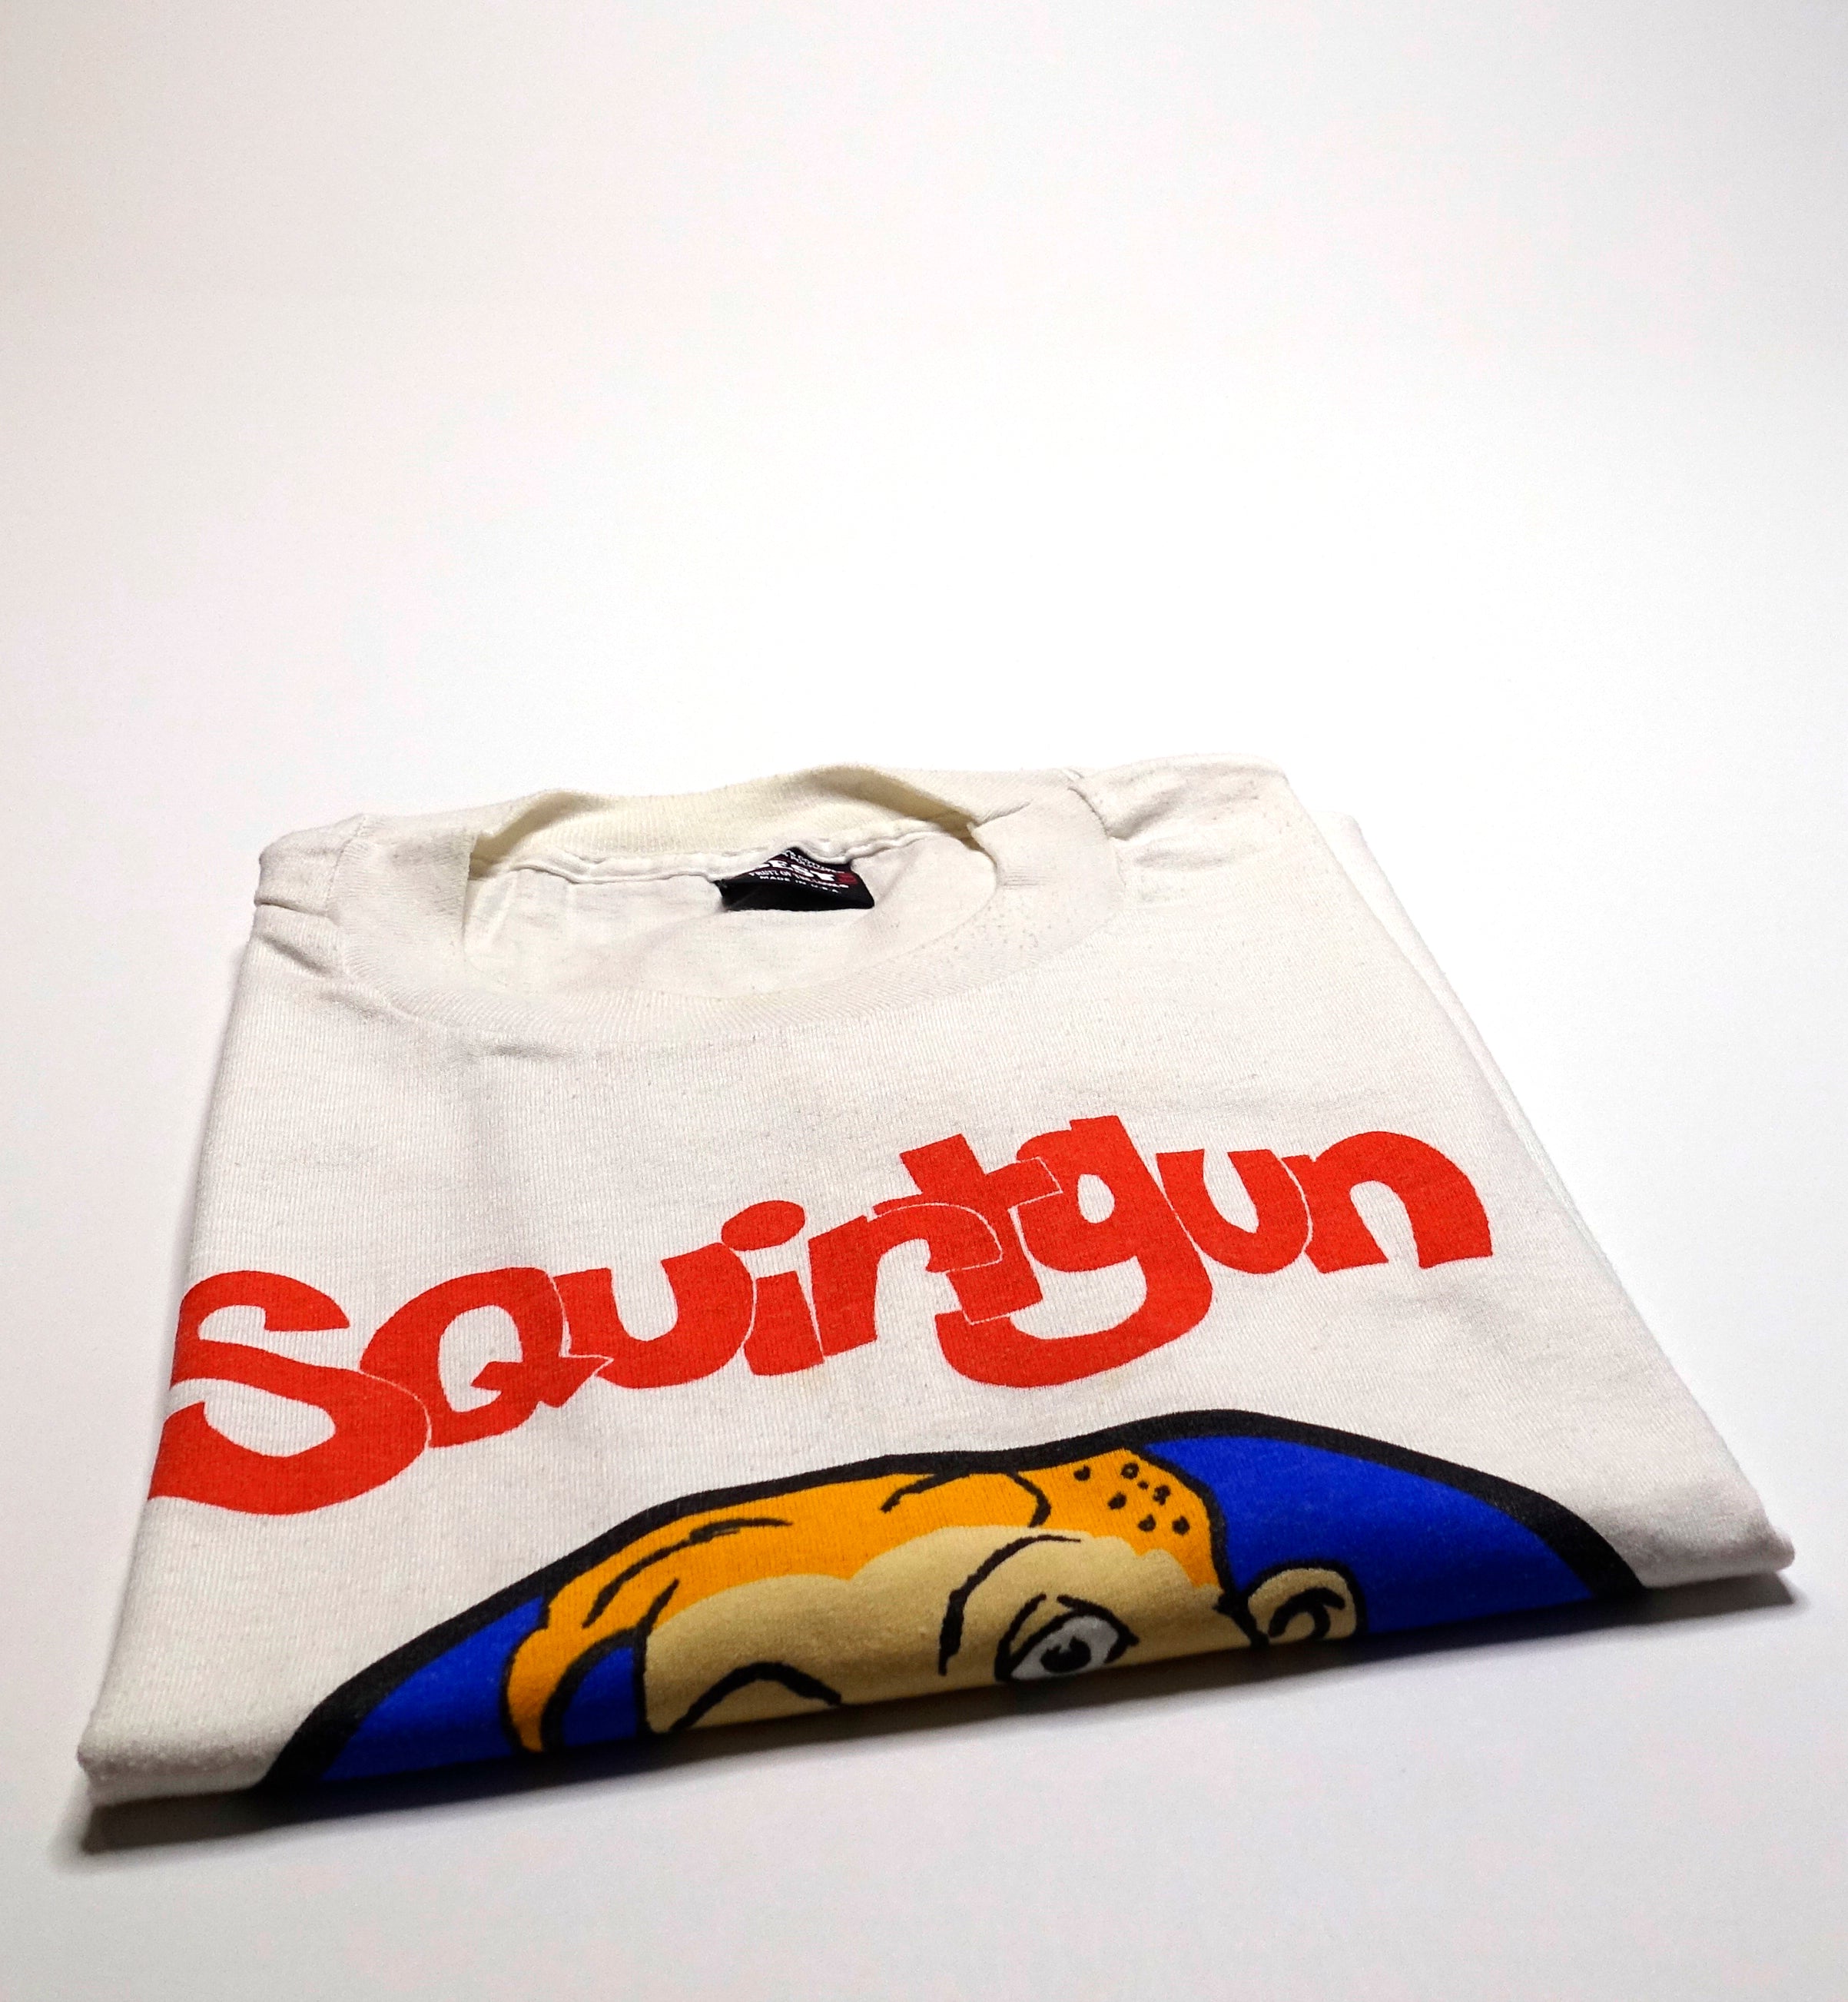 Squirtgun - Squirtgun S/T 1995 Tour Shirt Size XL